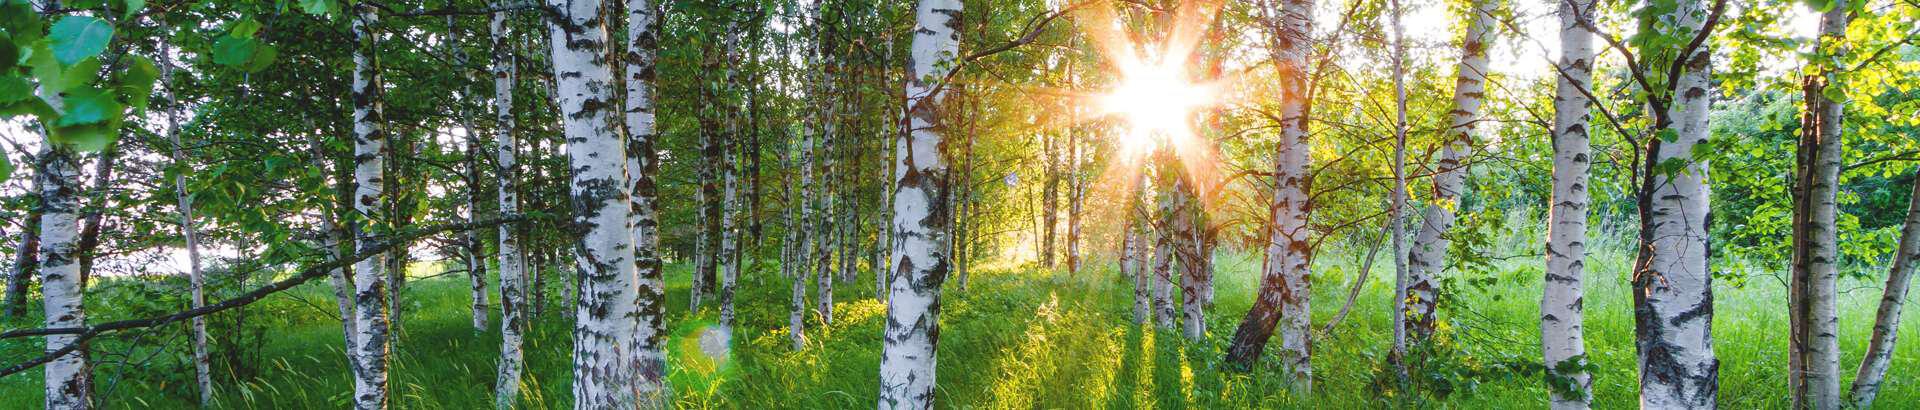 RMK on Eesti riigile kuuluva metsa ja teiste mitmekesiste looduskoosluste hoidja, kaitsja ja majandaja. RMK kasvatab metsa, hoiab loodusväärtusi, teenib riigile metsa majandades tulu, loob looduses liikumise võimalusi ja jagab loodusharidust.